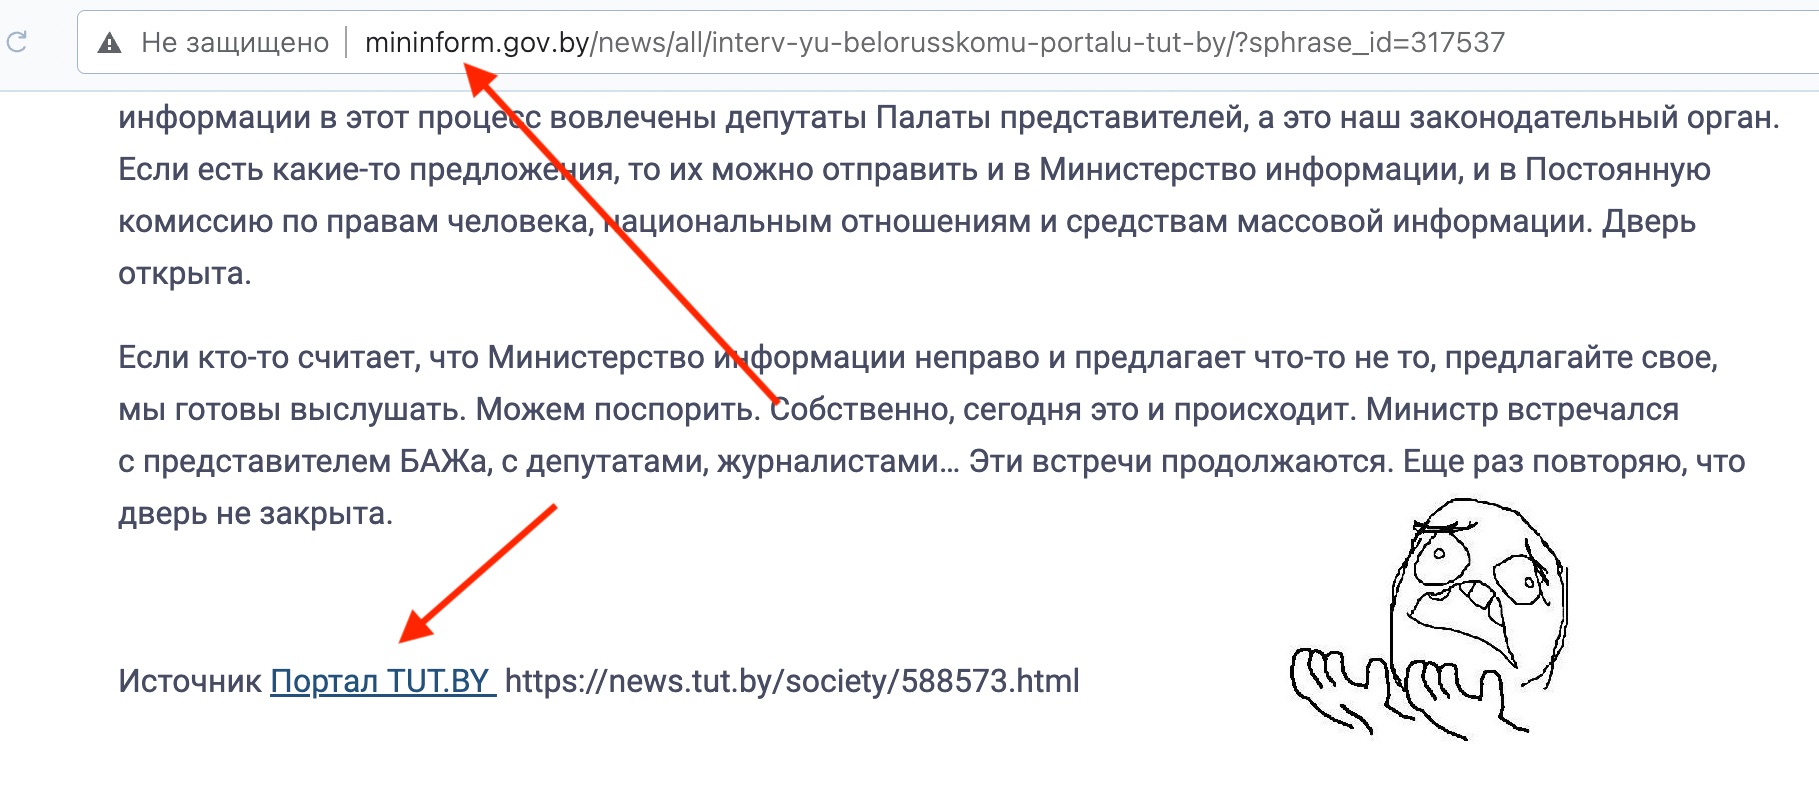 Министерство информации Беларуси распространяет "экстремистский" контент